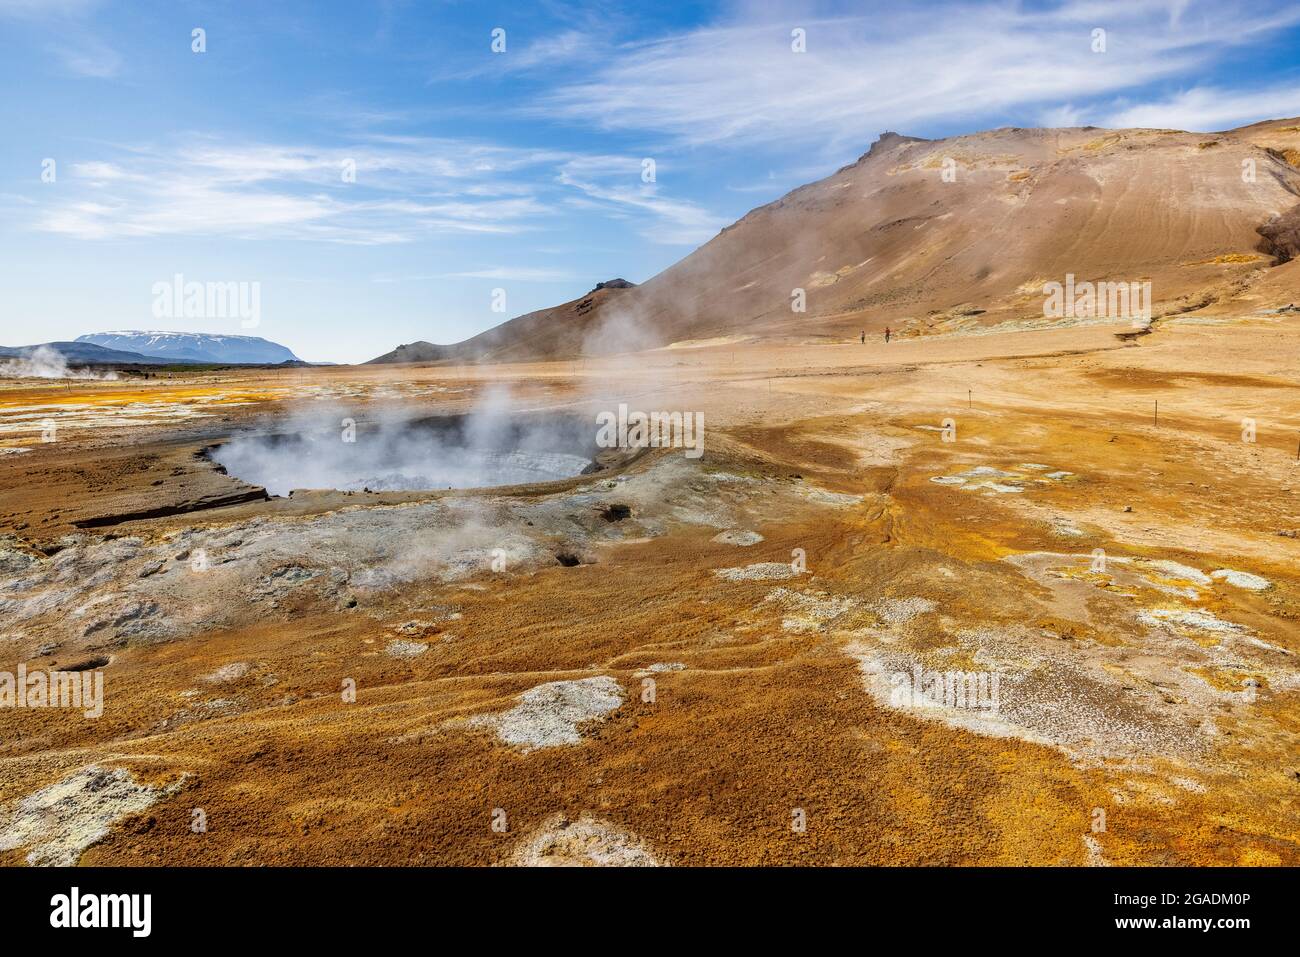 la vapeur s'élève des piscines de boue sulfureuse dans la zone surréaliste de paysage lunaire de l'hverir dans la région de namafjall à l'est du lac myvatn Banque D'Images